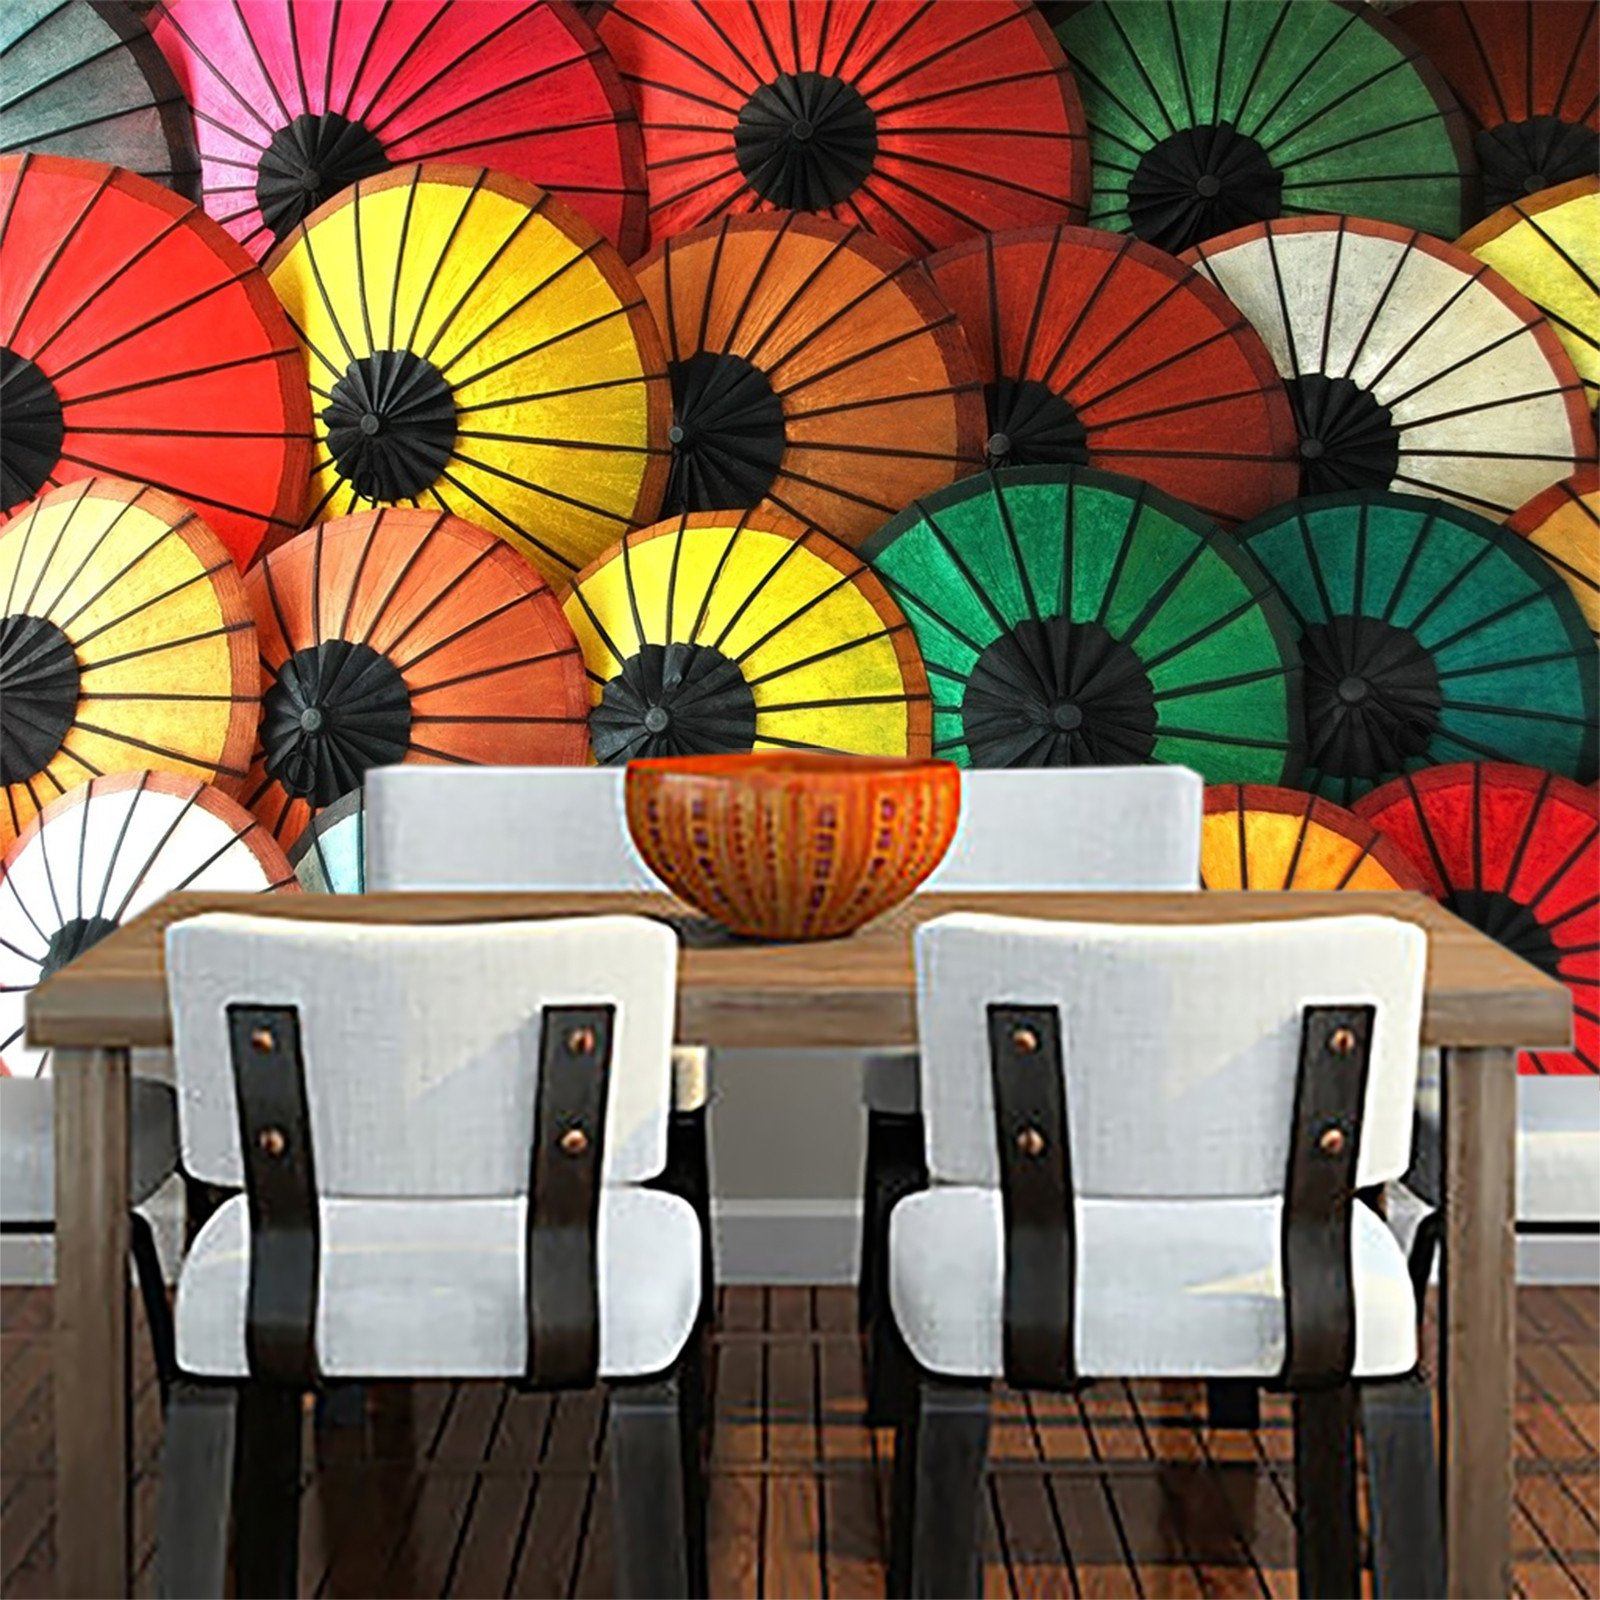 Color Umbrellas 123 Wallpaper AJ Wallpaper 